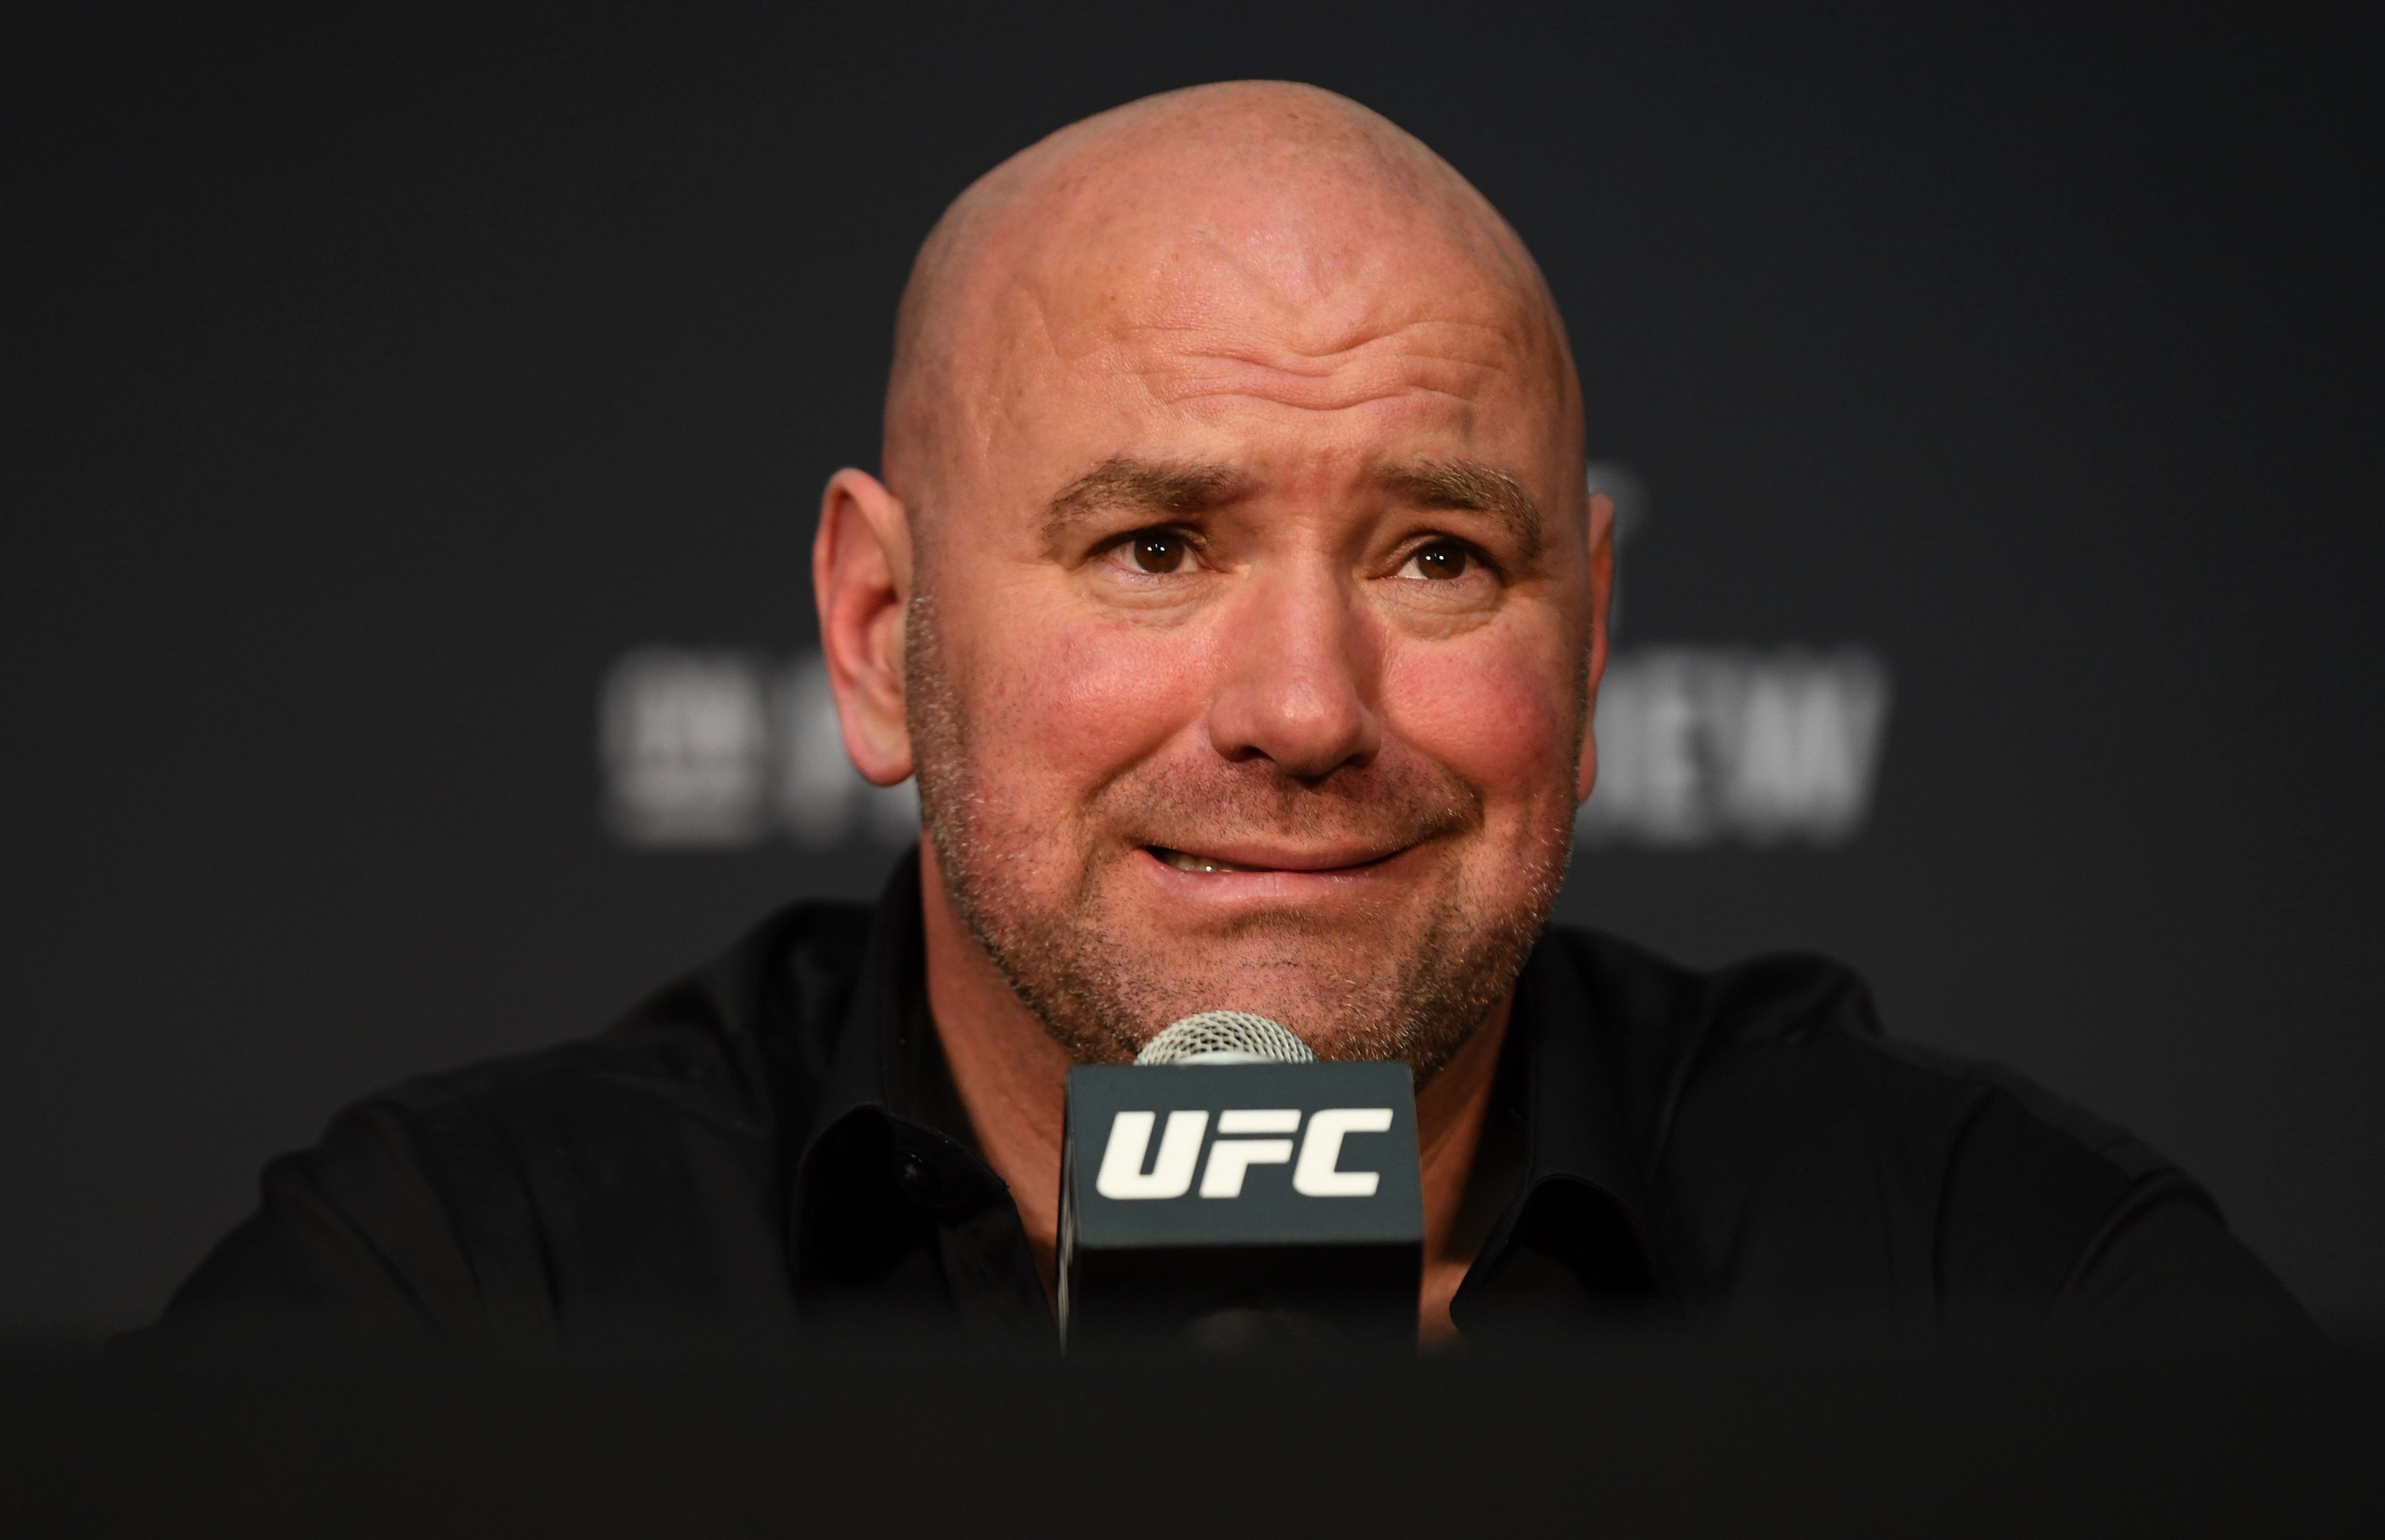 Отсутствие логики и спортивной составляющей: рейтинги UFC – беспредел, от Уайта ждут реформ